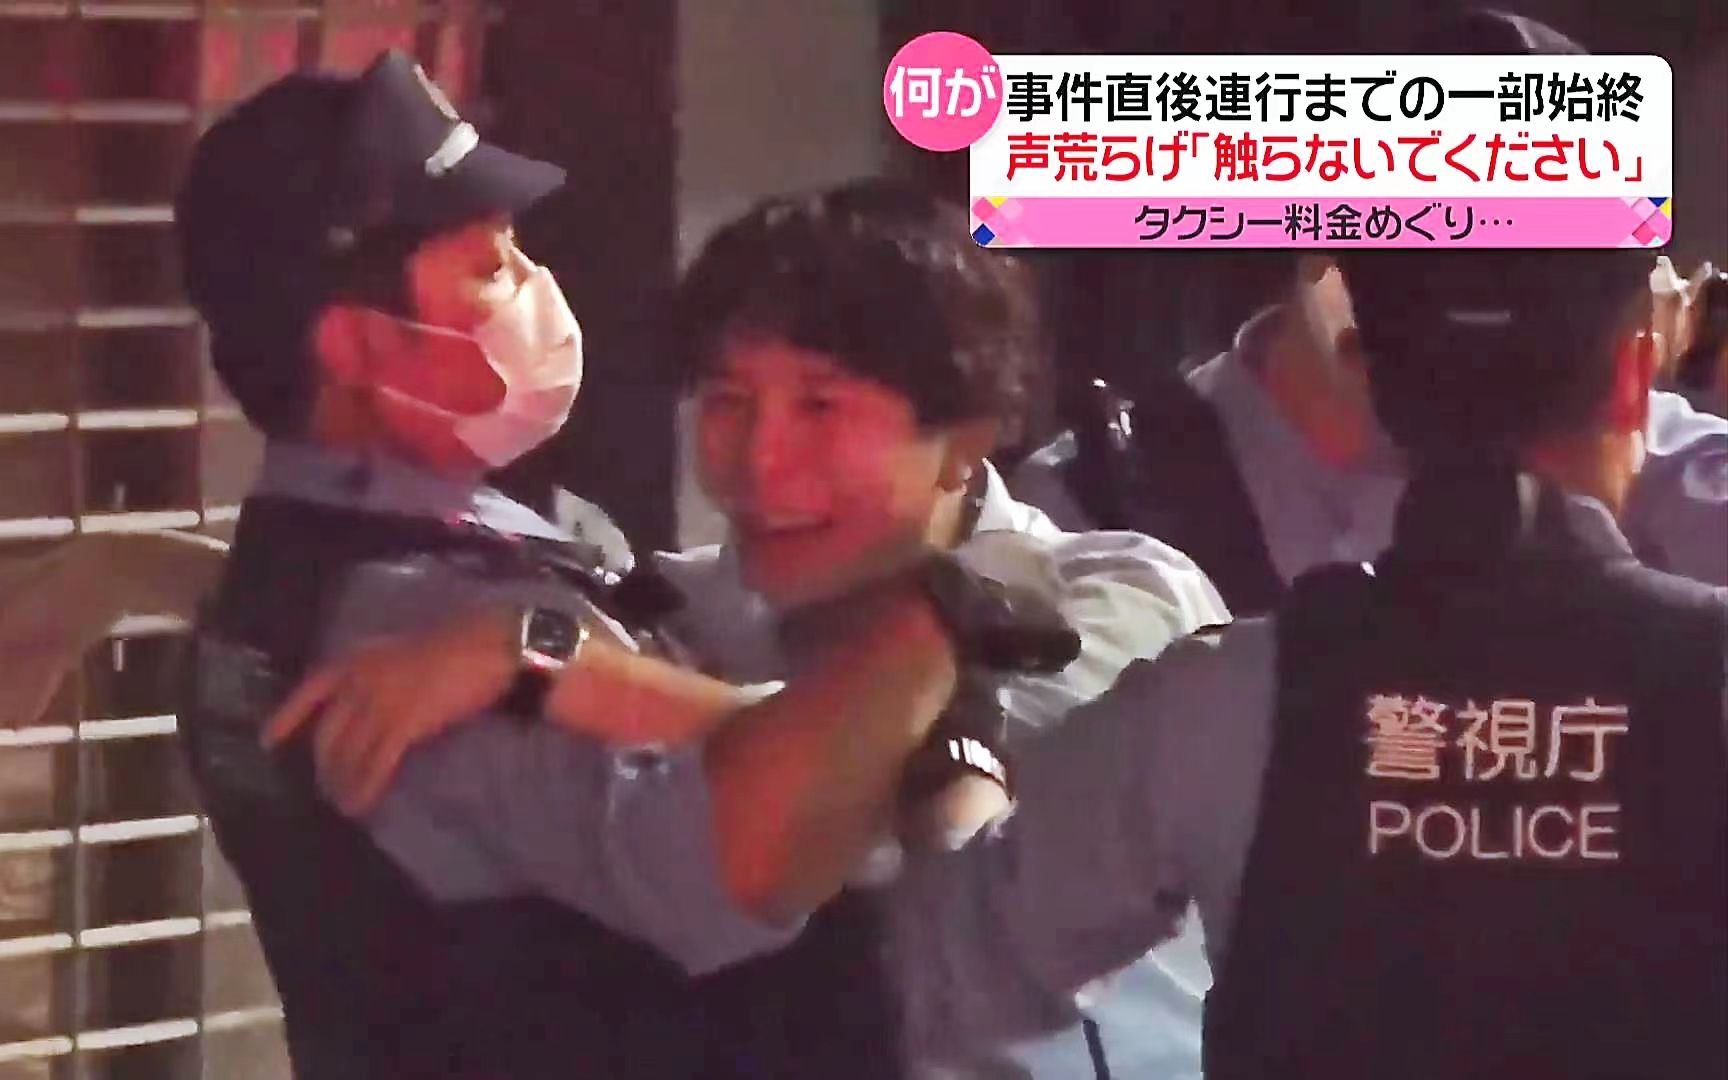 喝醉了酒的日本社畜开始抱着警察摸来摸去：因其涉嫌抢劫而被逮捕(中日双语)(22/09/08)